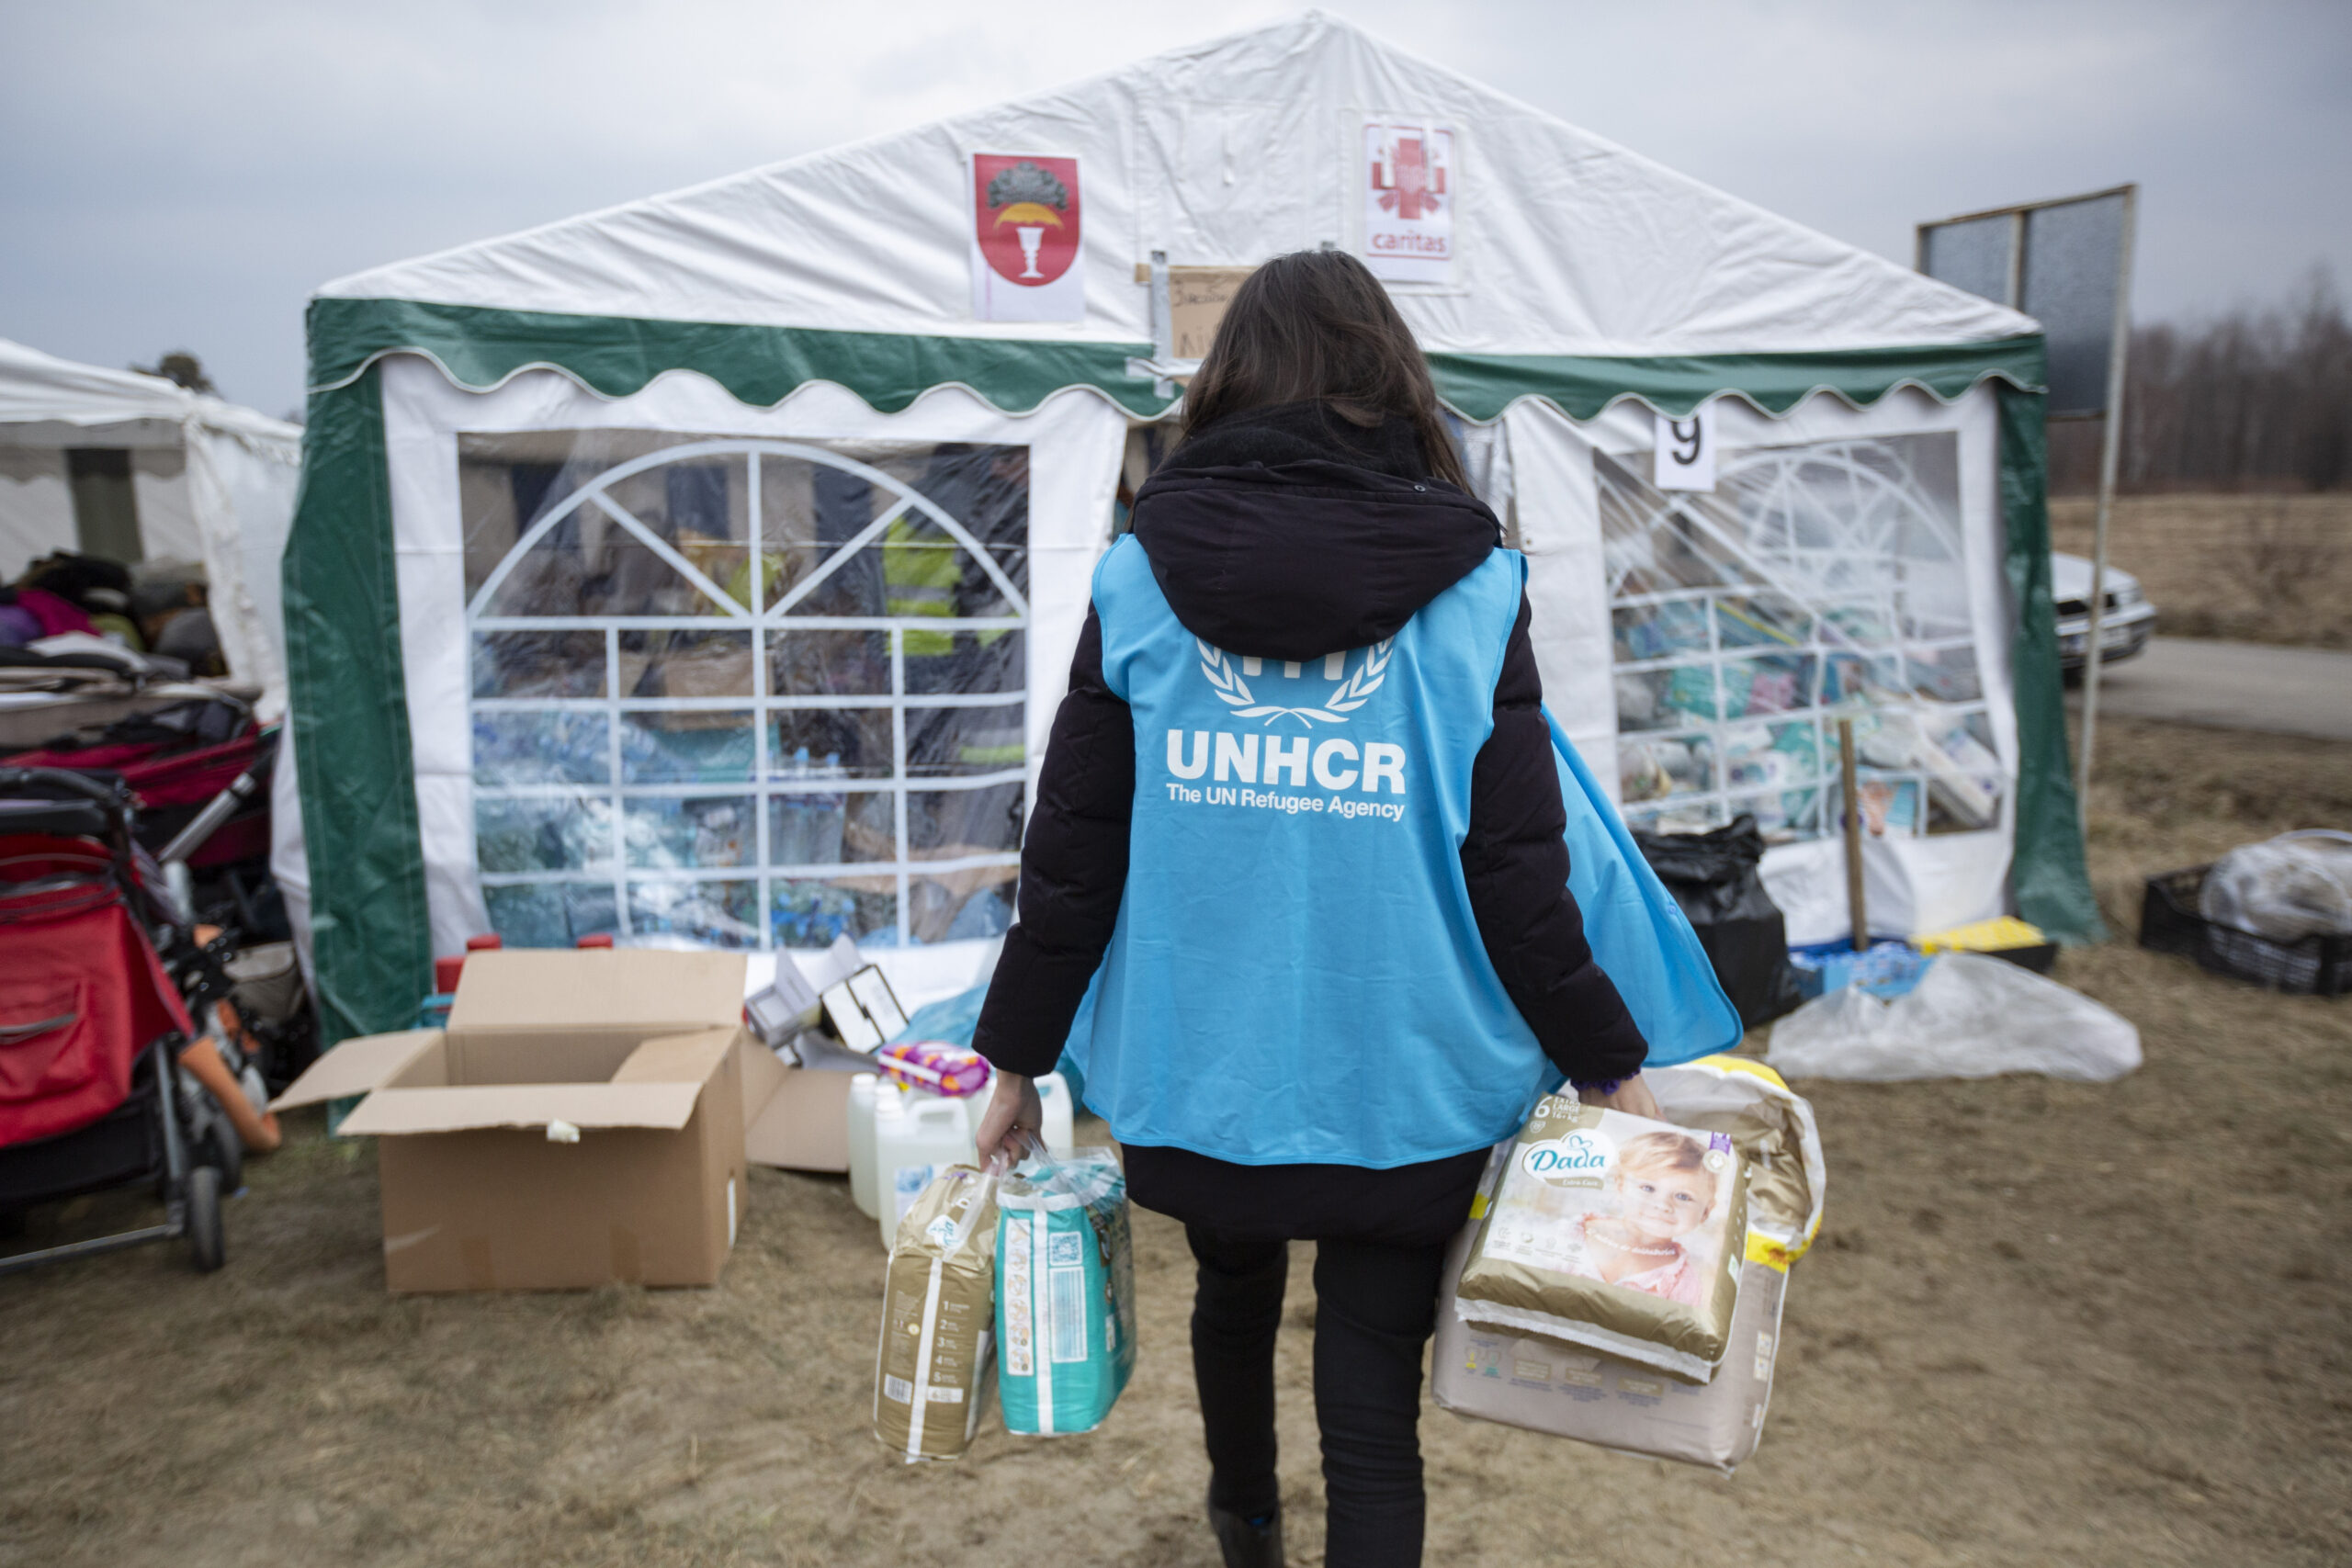 Een UNHCR-medewerker verzamelt luiers, voedsel, hygiëneproducten en andere zaken die door vrijgevige donoren zijn geschonken bij de grensovergang Budomierz in Polen. ©UNHCR/Valerio Muscella